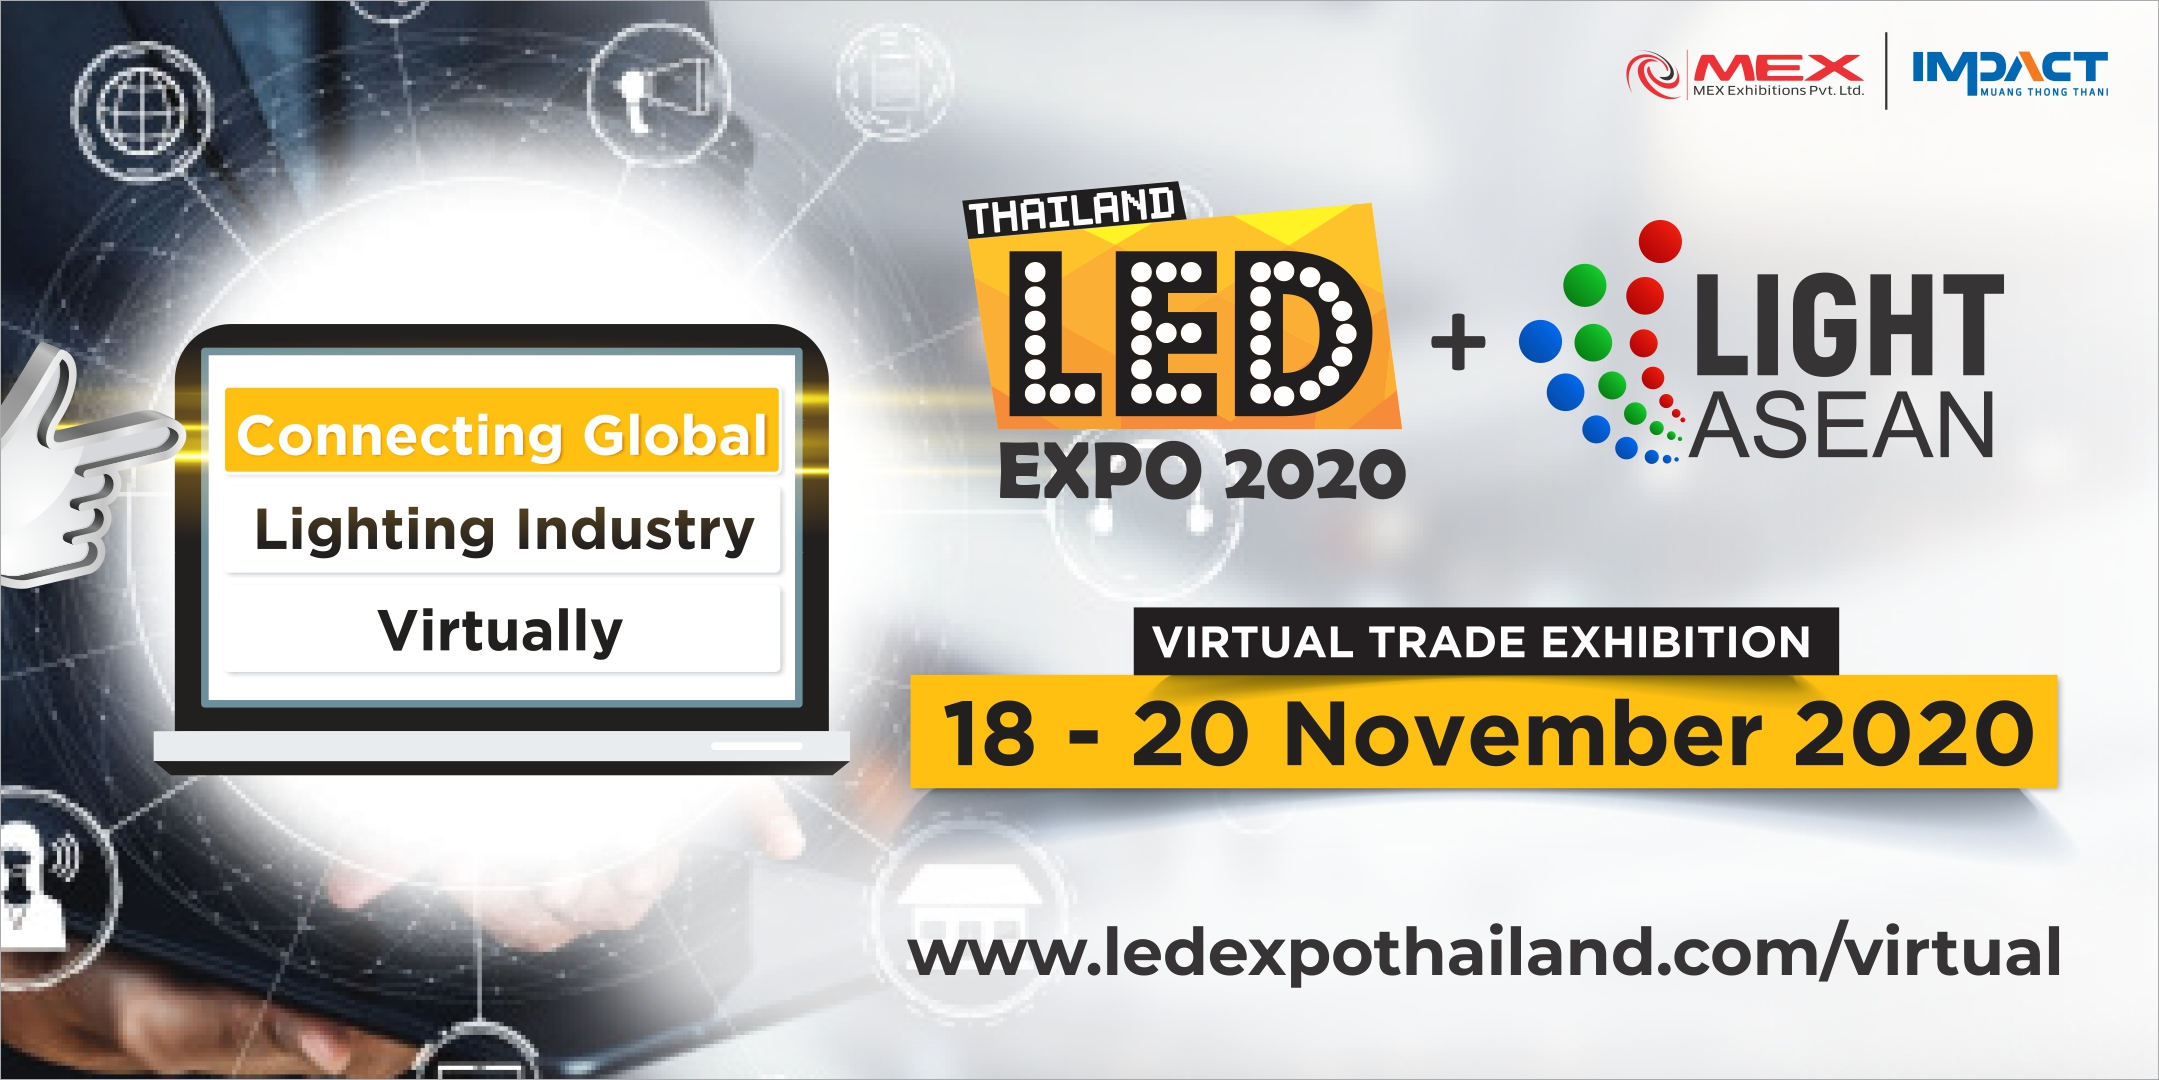 LED Expo Thailand 2020 + Light ASEAN, Bangkok, Thailand